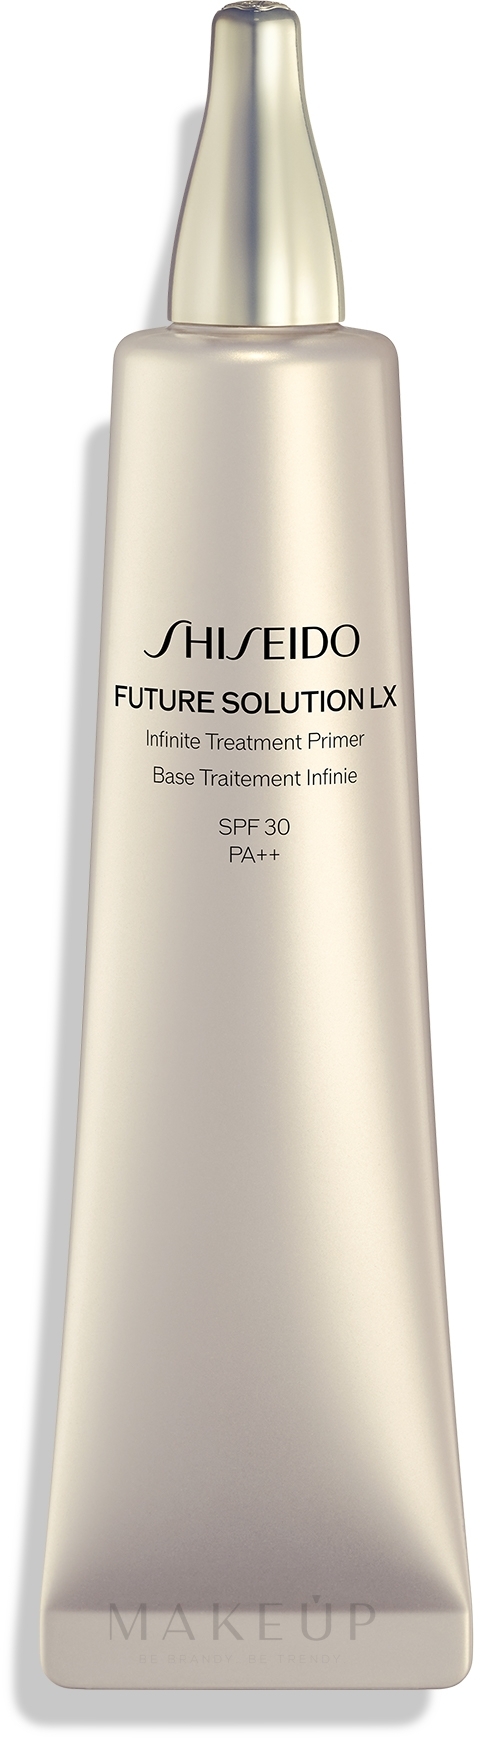 Gesichtsprimer - Shiseido Future Solution LX Infinite Treatment Primer SPF30 PA++ — Bild 40 ml